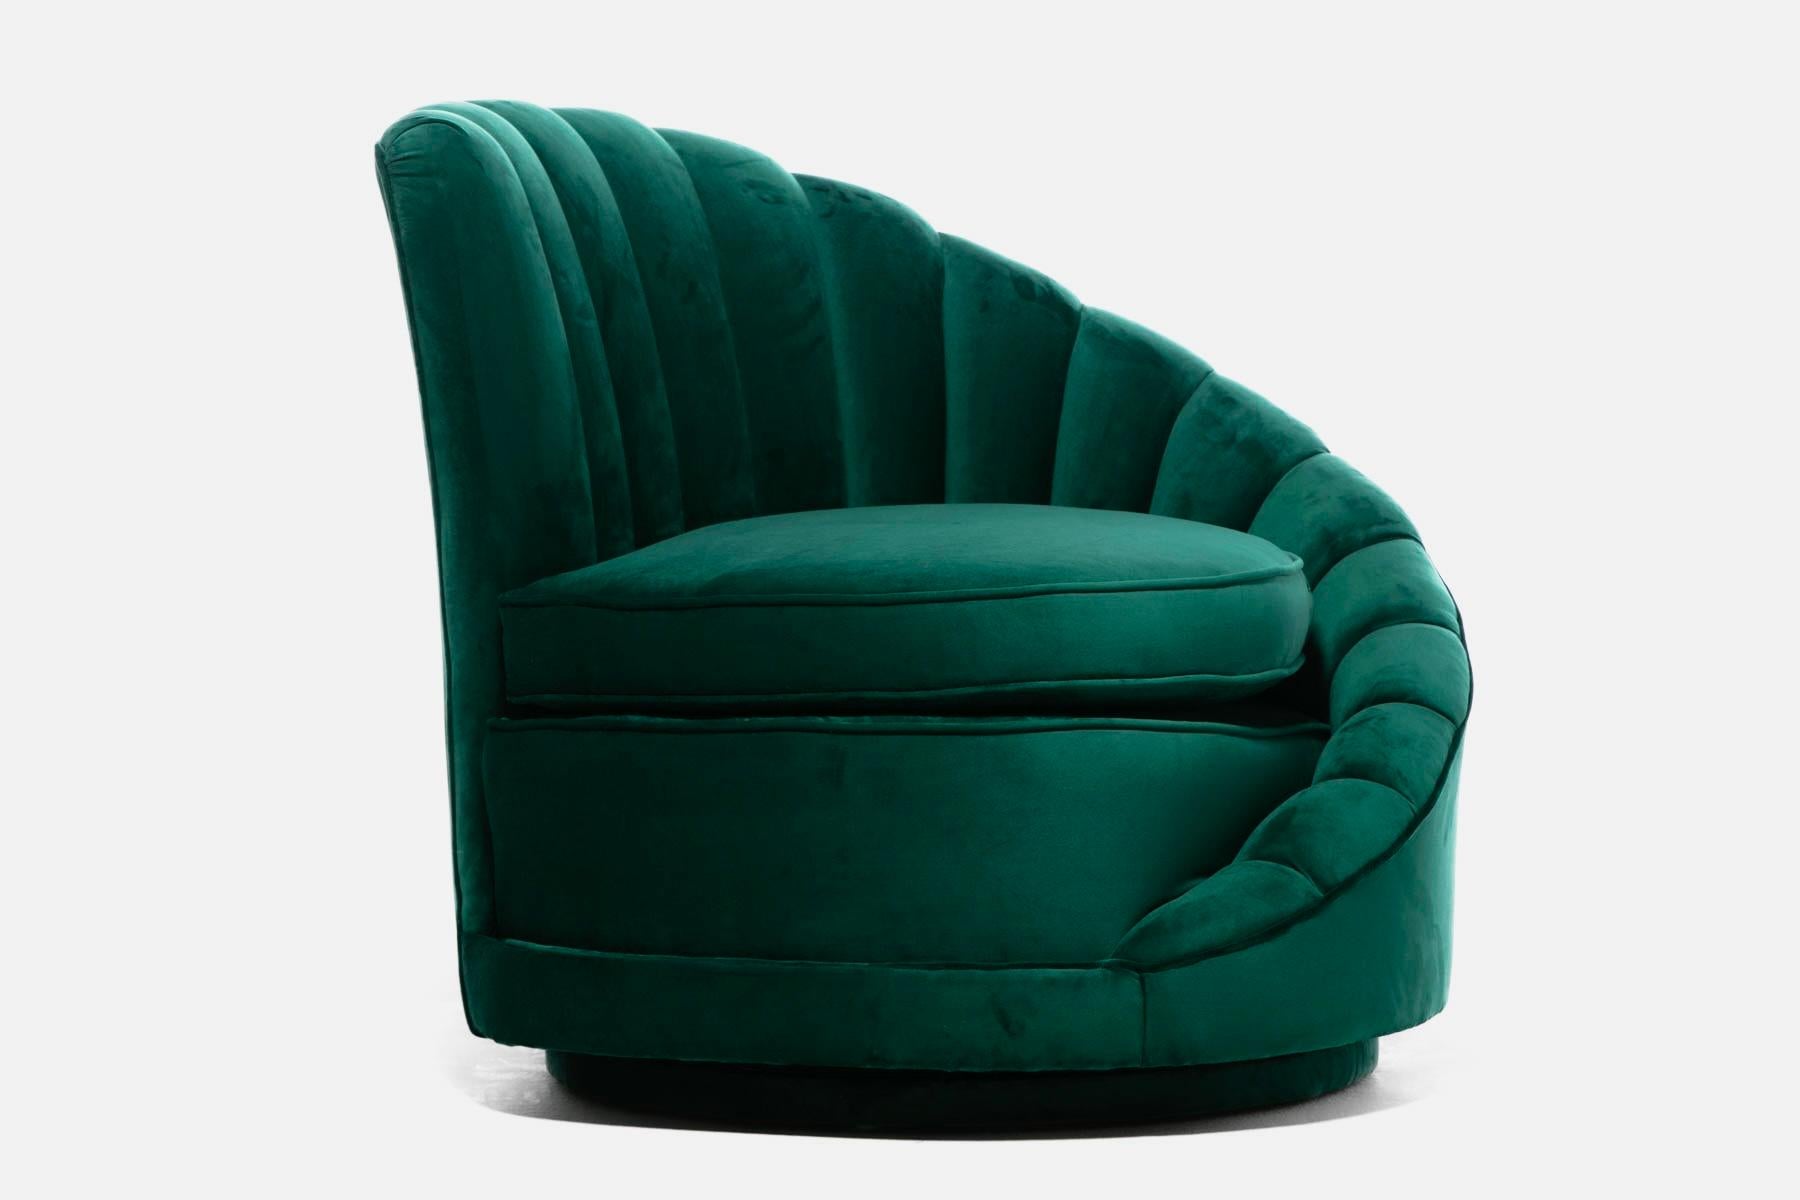 Hollywood Regency Glamorous Asymmetrical Swivel Chairs in Emerald Green Velvet For Sale 8